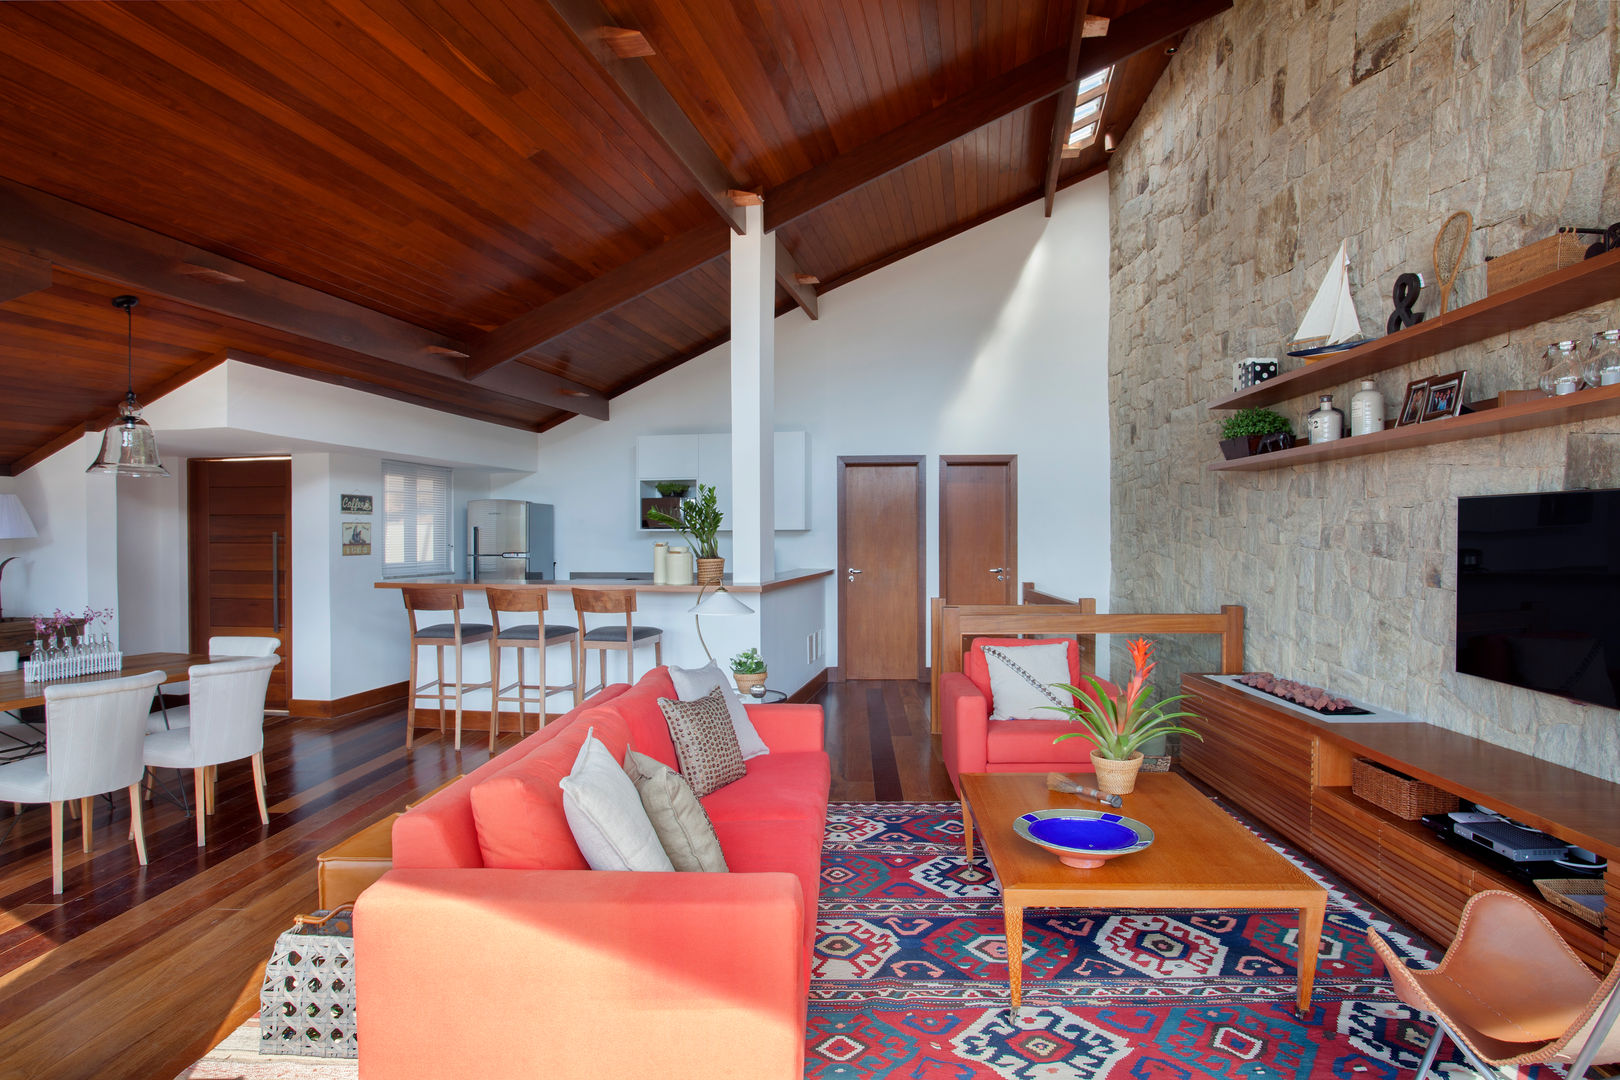 Casa Itaipava, sadala gomide arquitetura sadala gomide arquitetura Country style living room